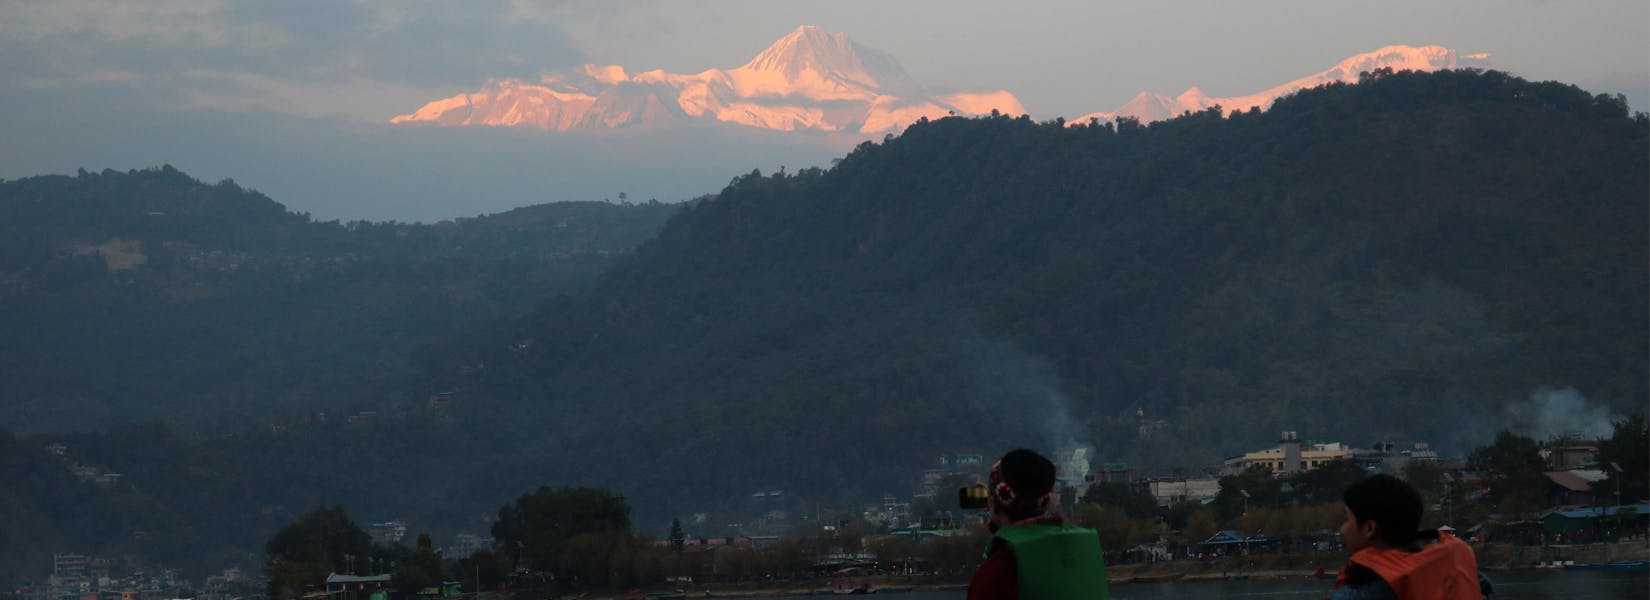 Pokhara Sarangkot Honeymoon Tour - <span class="font-light">3 days</span>